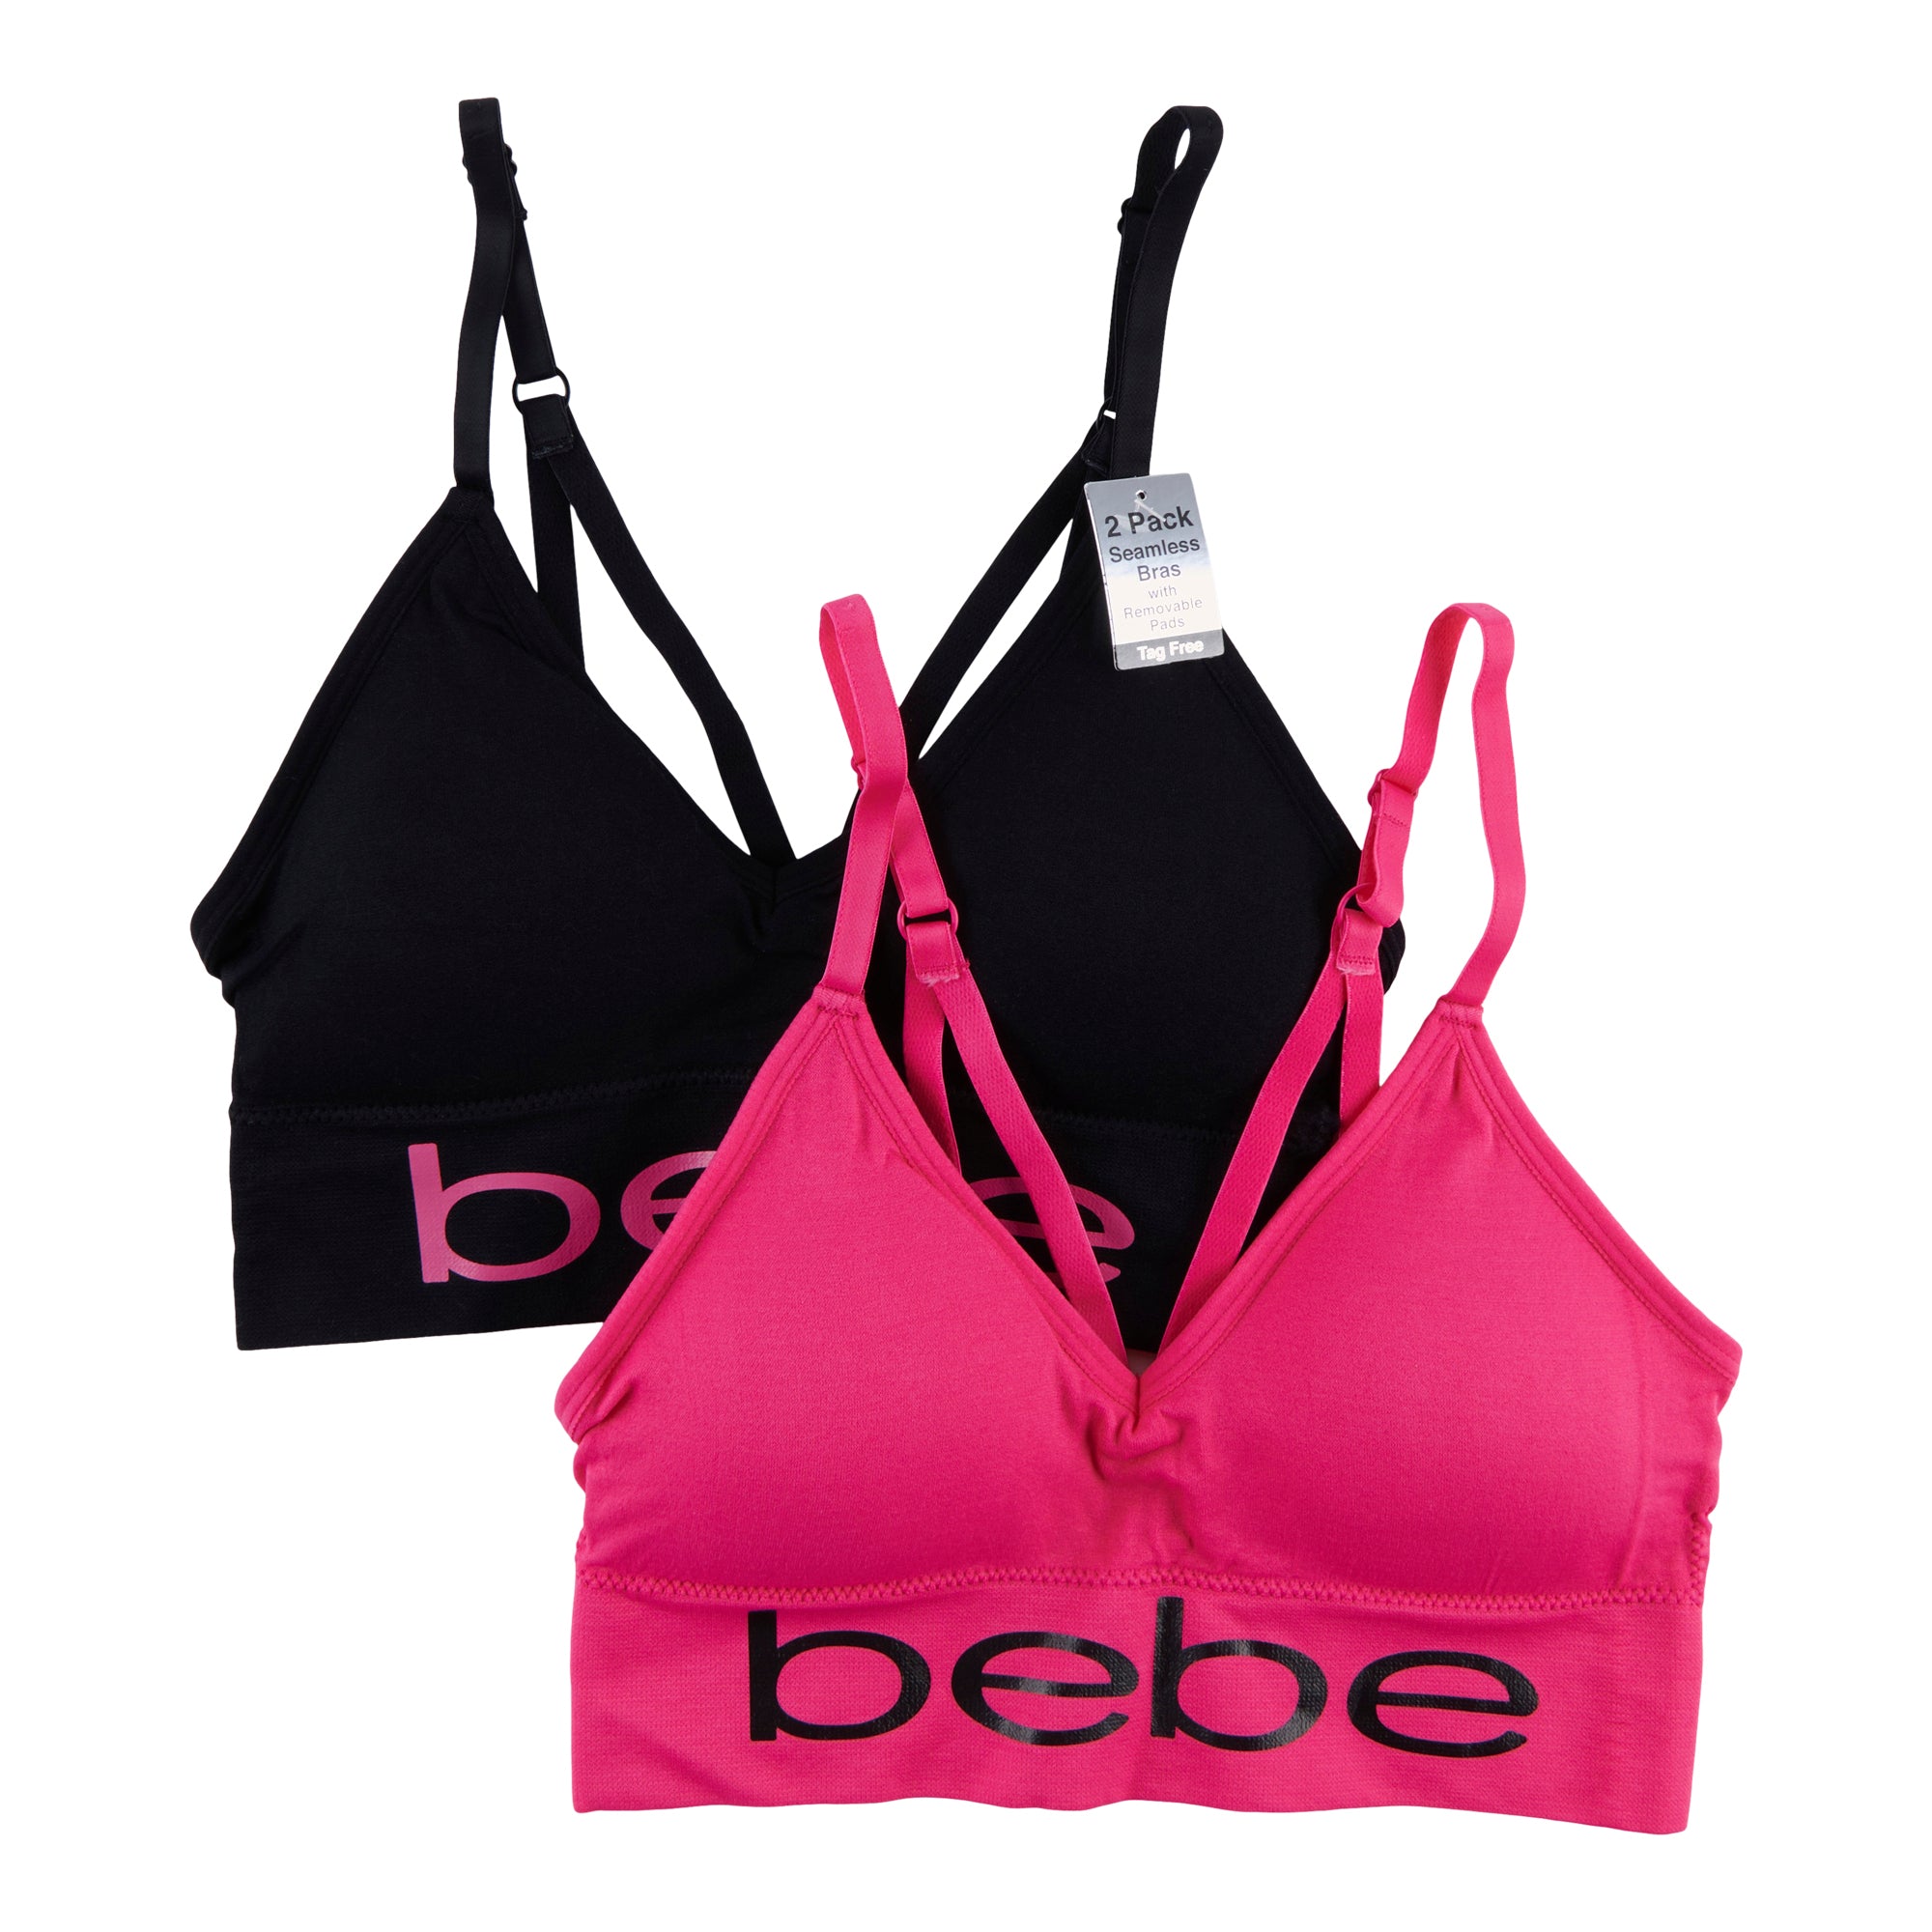 Bebe Women's Seamless Bra, 2-Pack – Giant Tiger